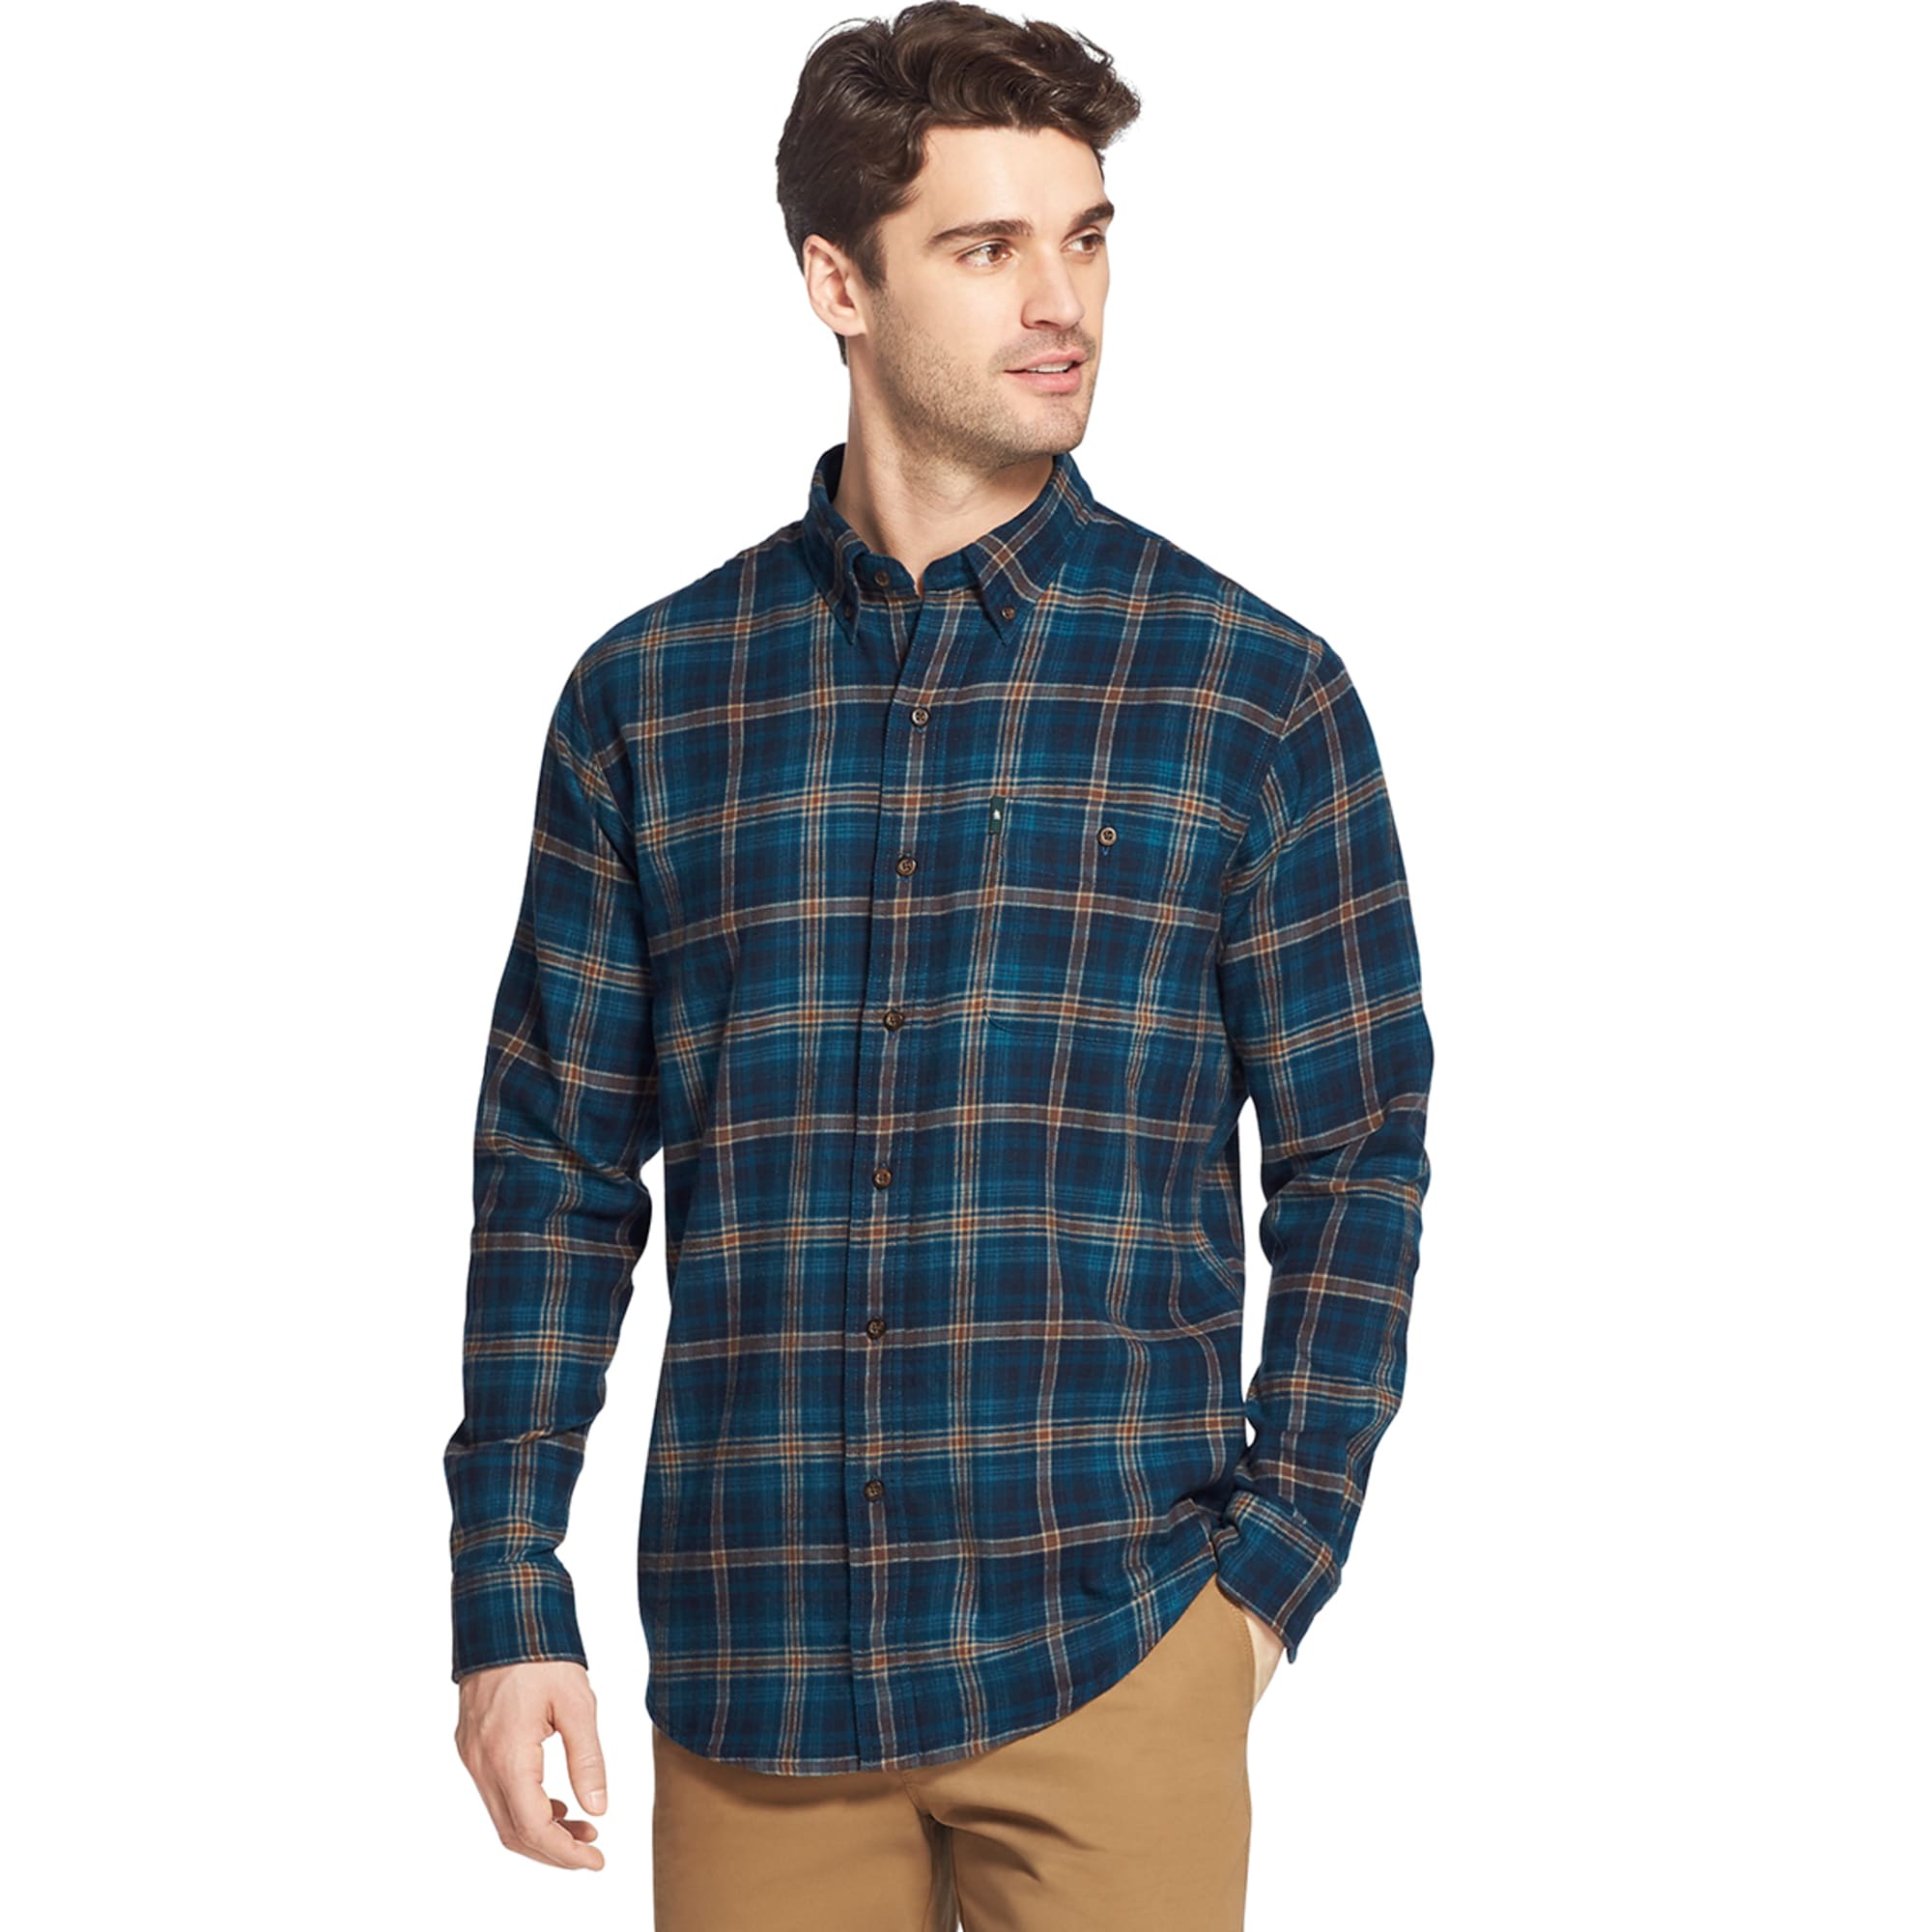 G.H. BASS & CO. Men's Fireside Long-Sleeve Flannel Shirt